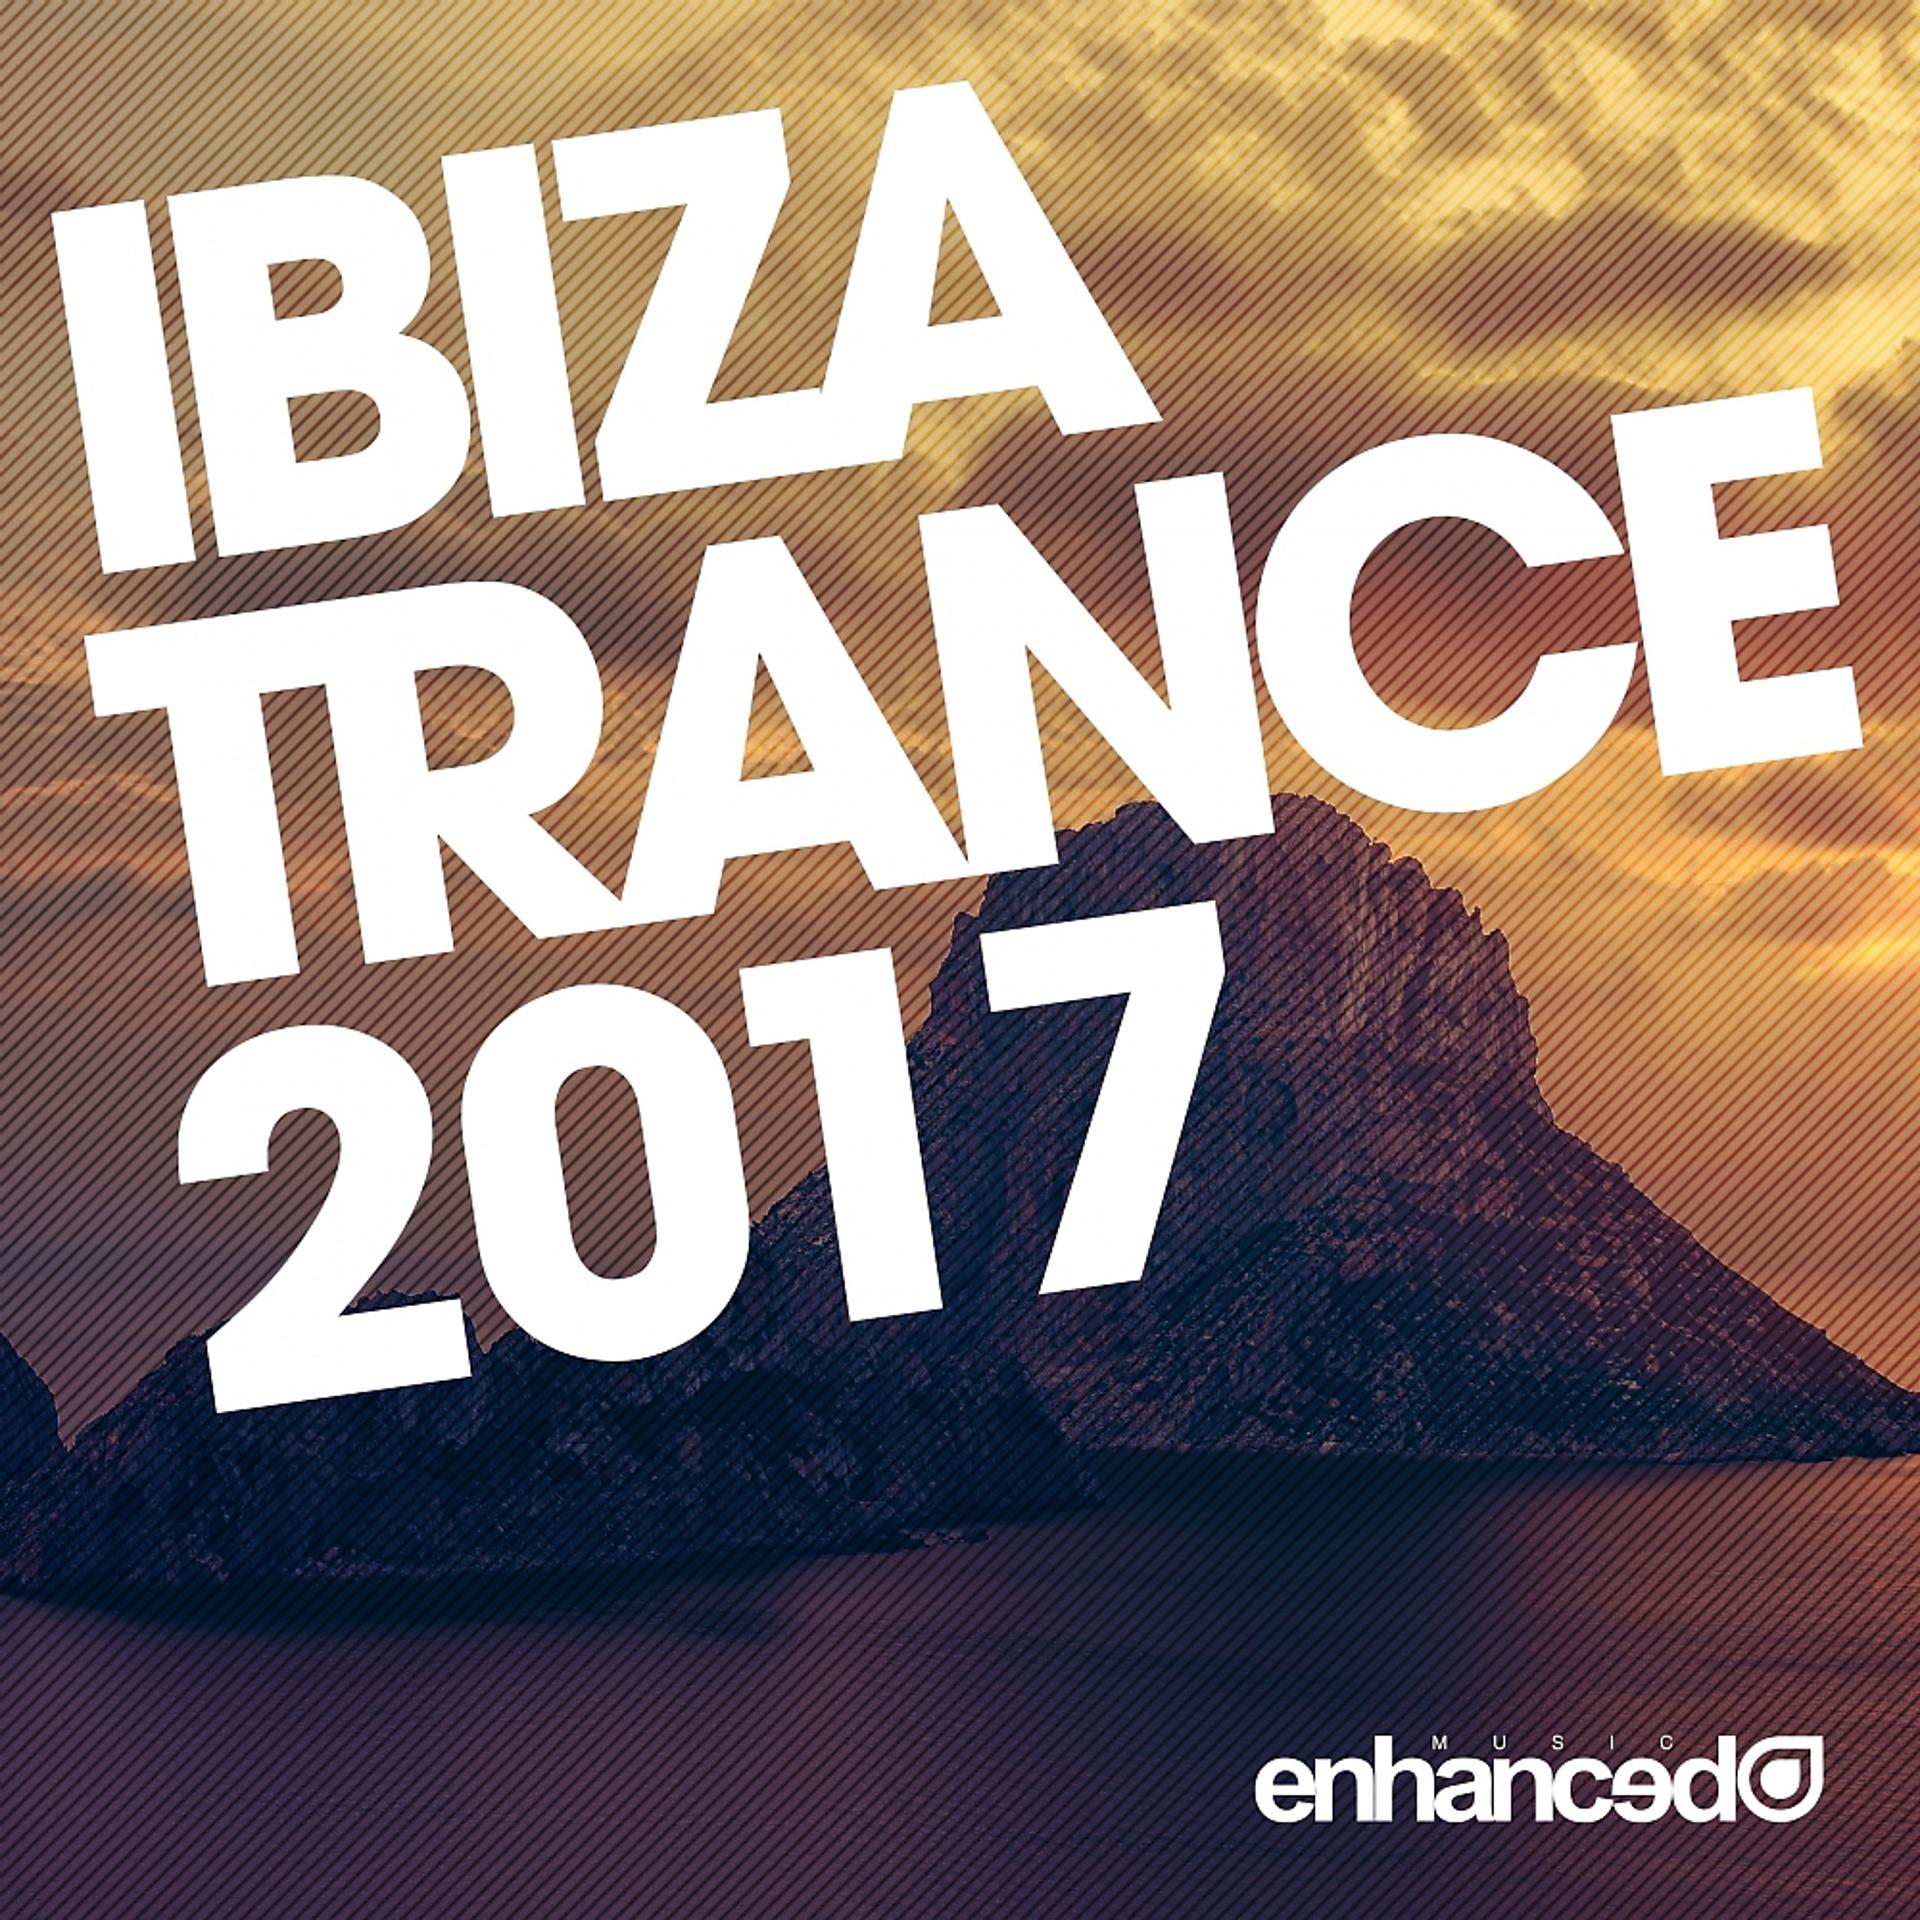 Постер альбома Ibiza Trance 2017